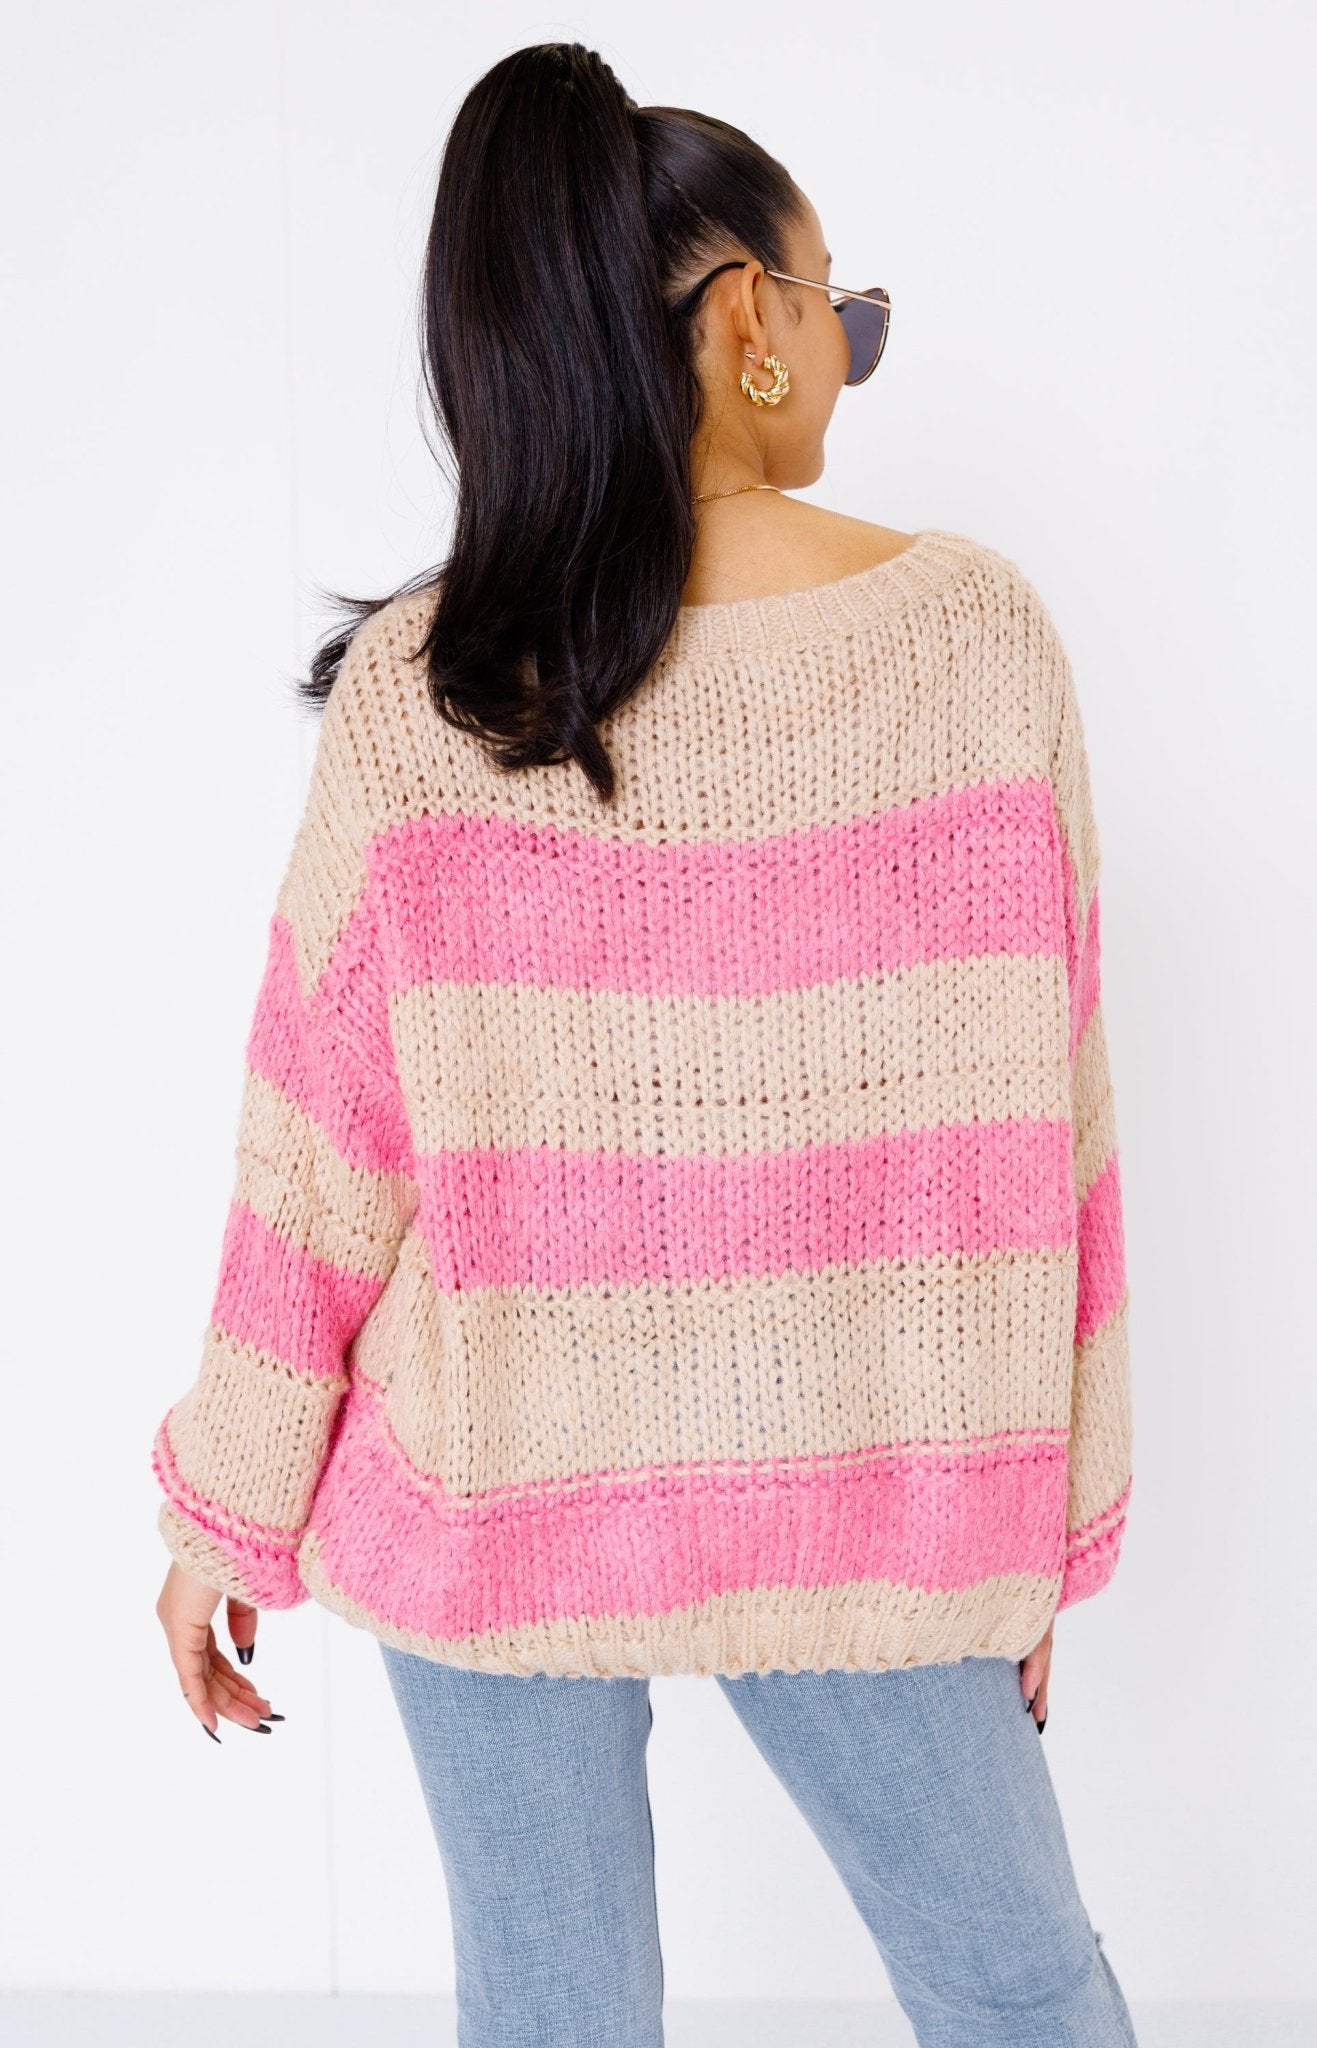 Blush Horizon Sweater, BEIGE/PINK Sweaters Under $100 - 18L